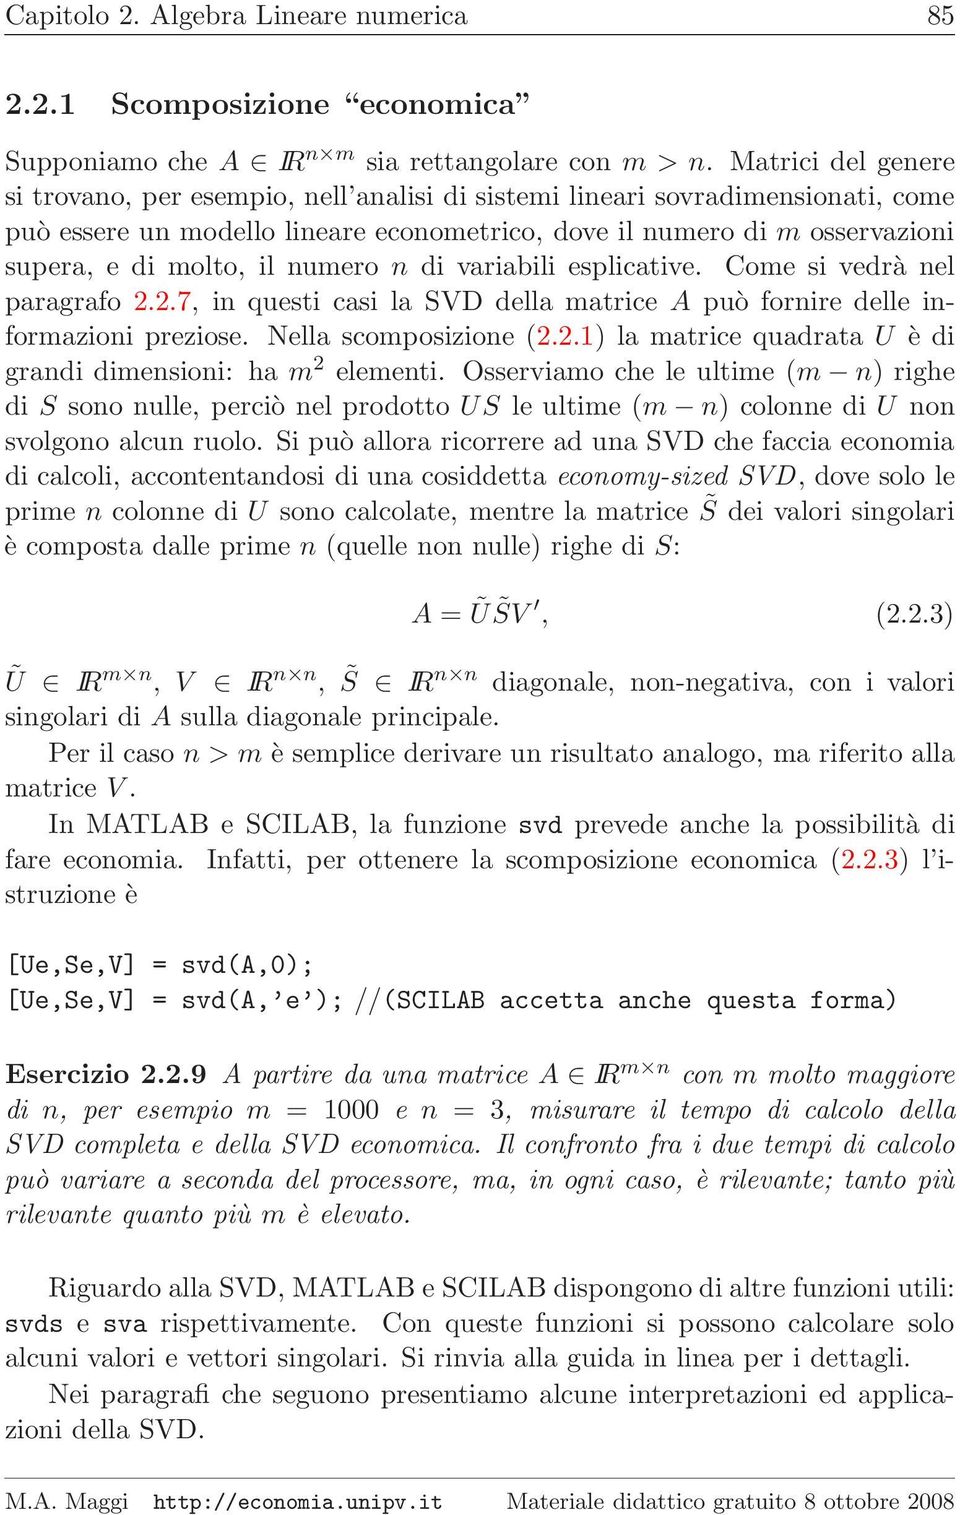 numero n di variabili esplicative. Come si vedrà nel paragrafo 2.2.7, in questi casi la SVD della matrice A può fornire delle informazioni preziose. Nella scomposizione (2.2.1) la matrice quadrata U è di grandi dimensioni: ha m 2 elementi.